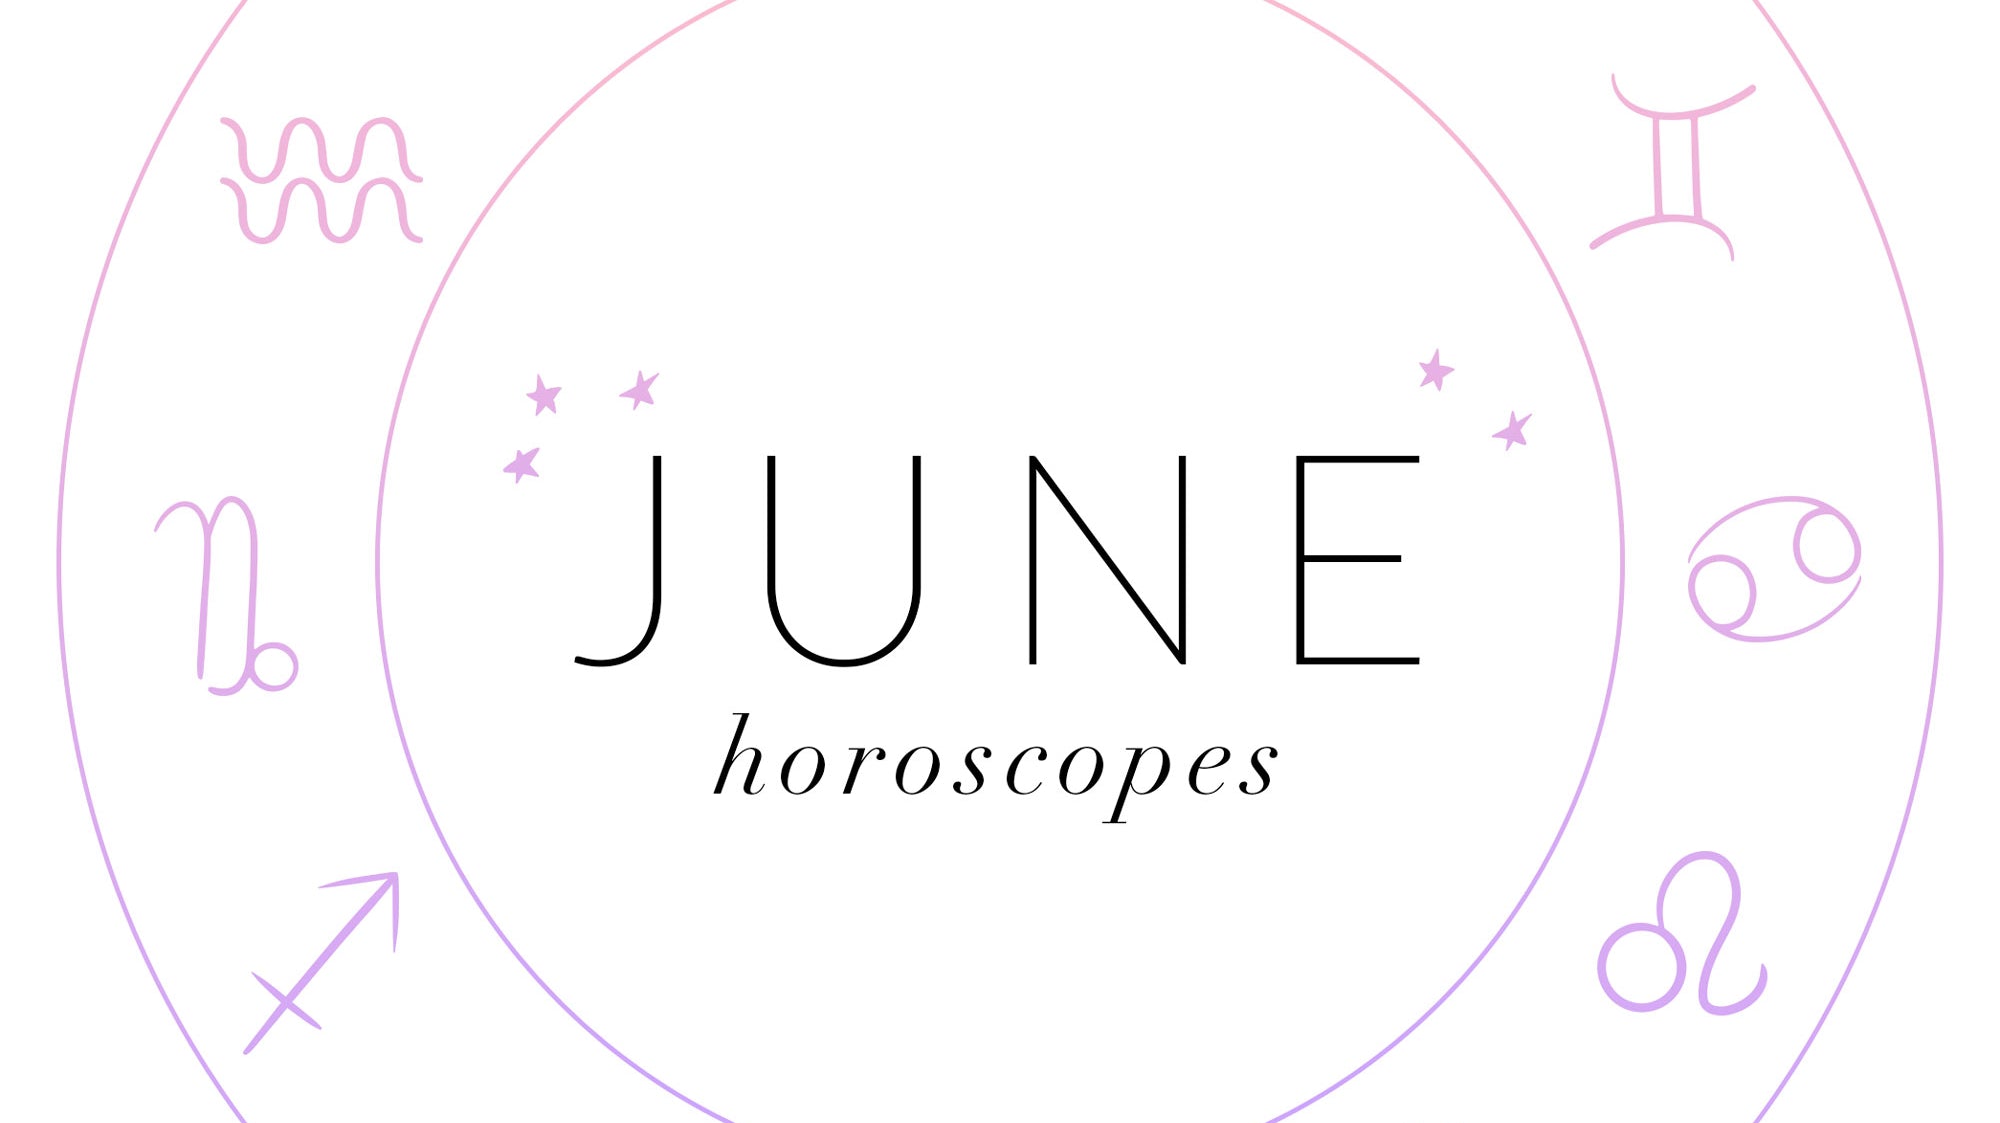 June Horoscopes